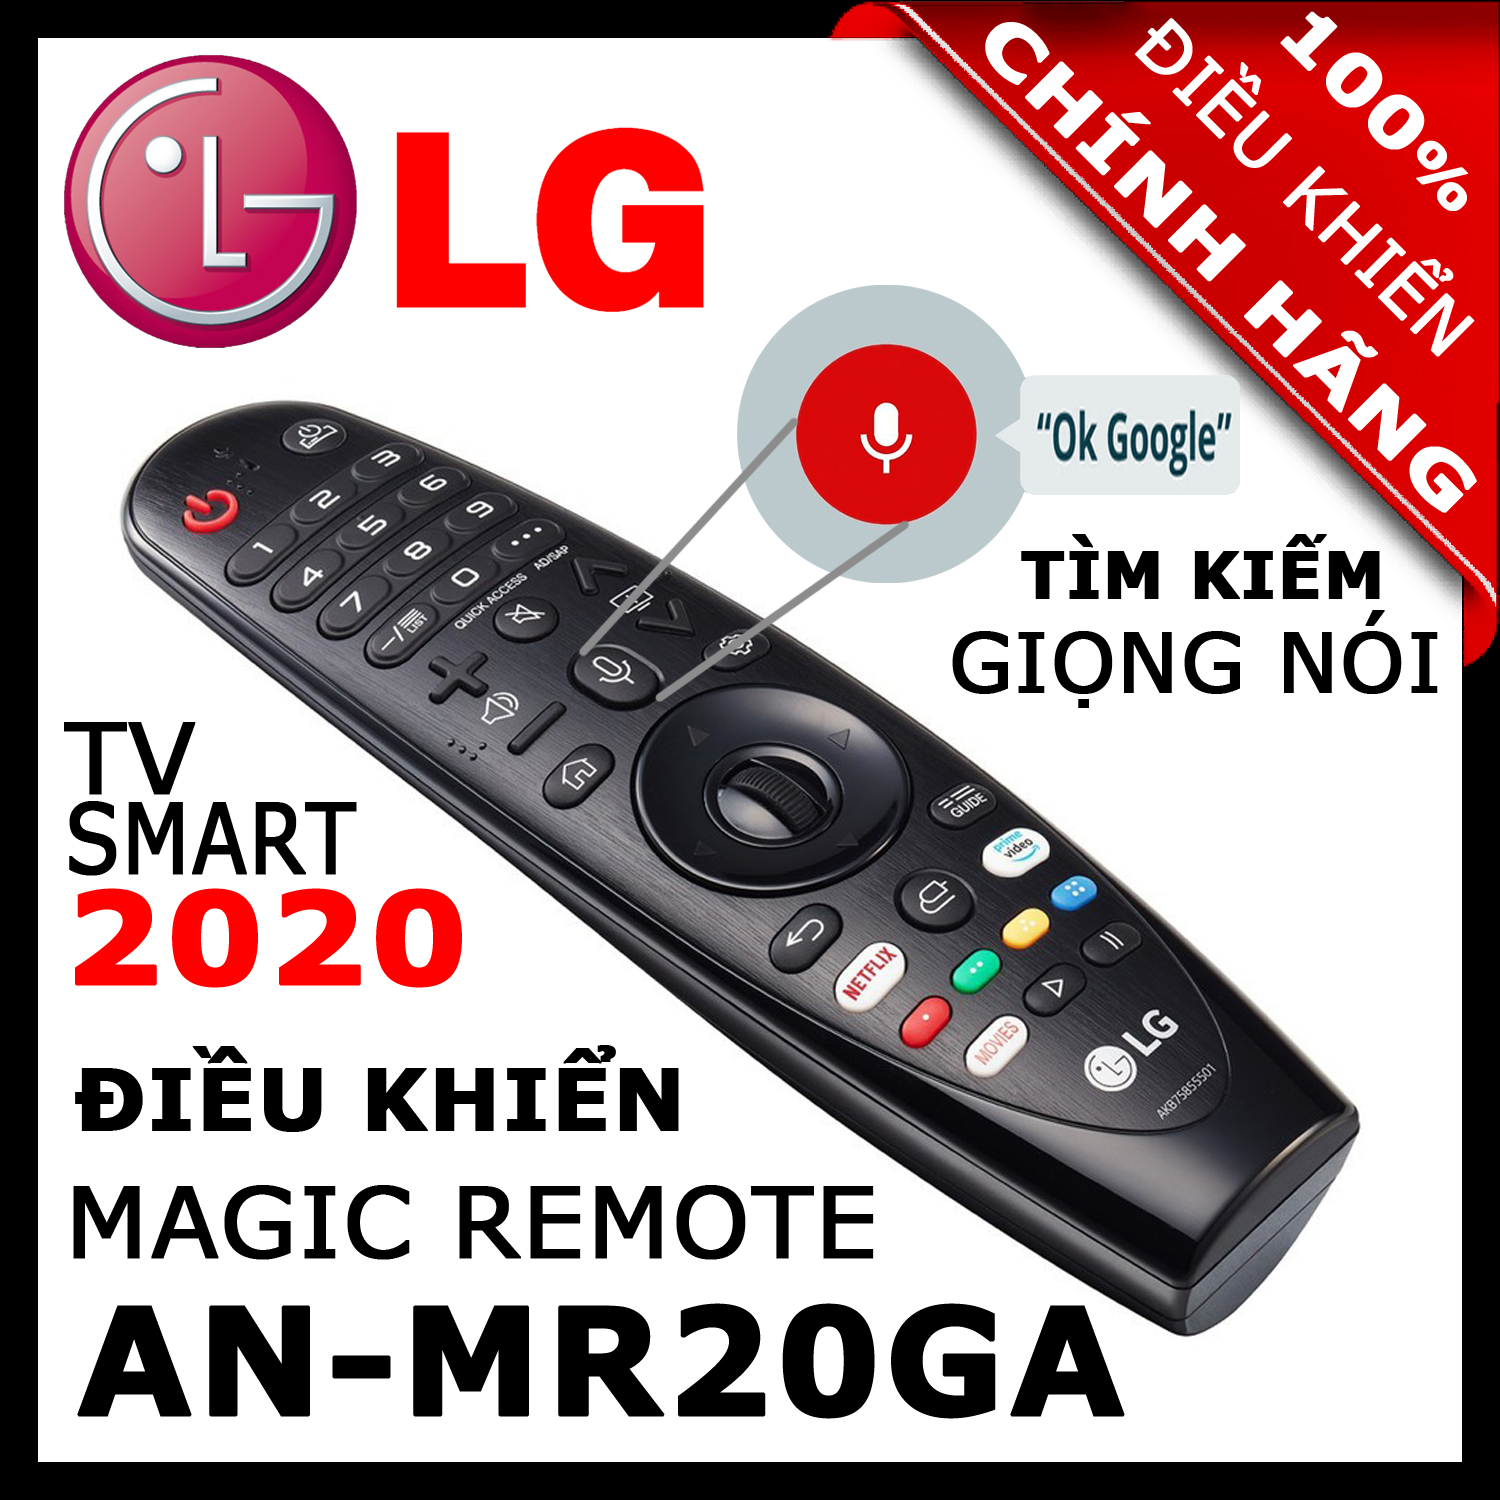 ĐIỀU KHIỂN Remote Tivi LG MR20GA thay thế MR19BA và MR18BA và MR650A có Giọng nói Chuột bay cho tivi LG 2020, 2019, 2018, 2017 Magic Remote AN-MR20GA mã số AKB75855501 HÀNG XỊN. Remote cho tivi LG sản xuất năm 2020